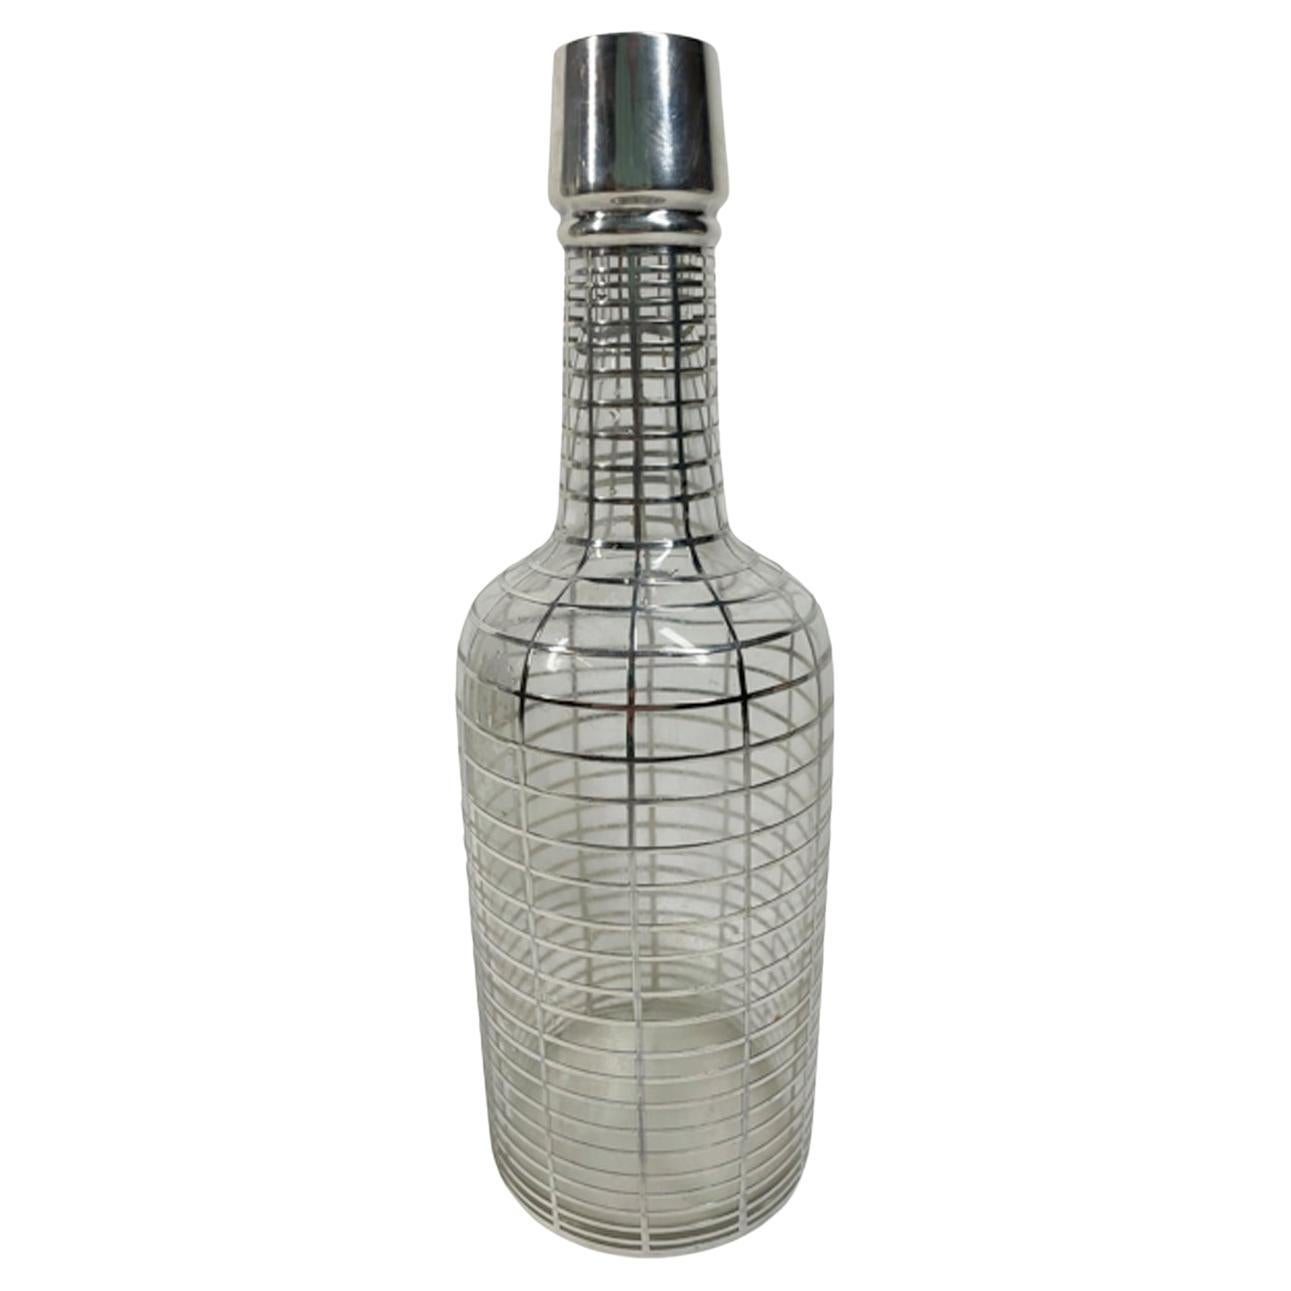 Barflasche aus Klarglas mit Silberauflage aus dem frühen 20. Jahrhundert mit schmalen Sterling-Ringen, die in gleichmäßigen Abständen von oben nach unten verlaufen und durch vertikale Linien miteinander verbunden sind. Auf einem rechteckigen Feld